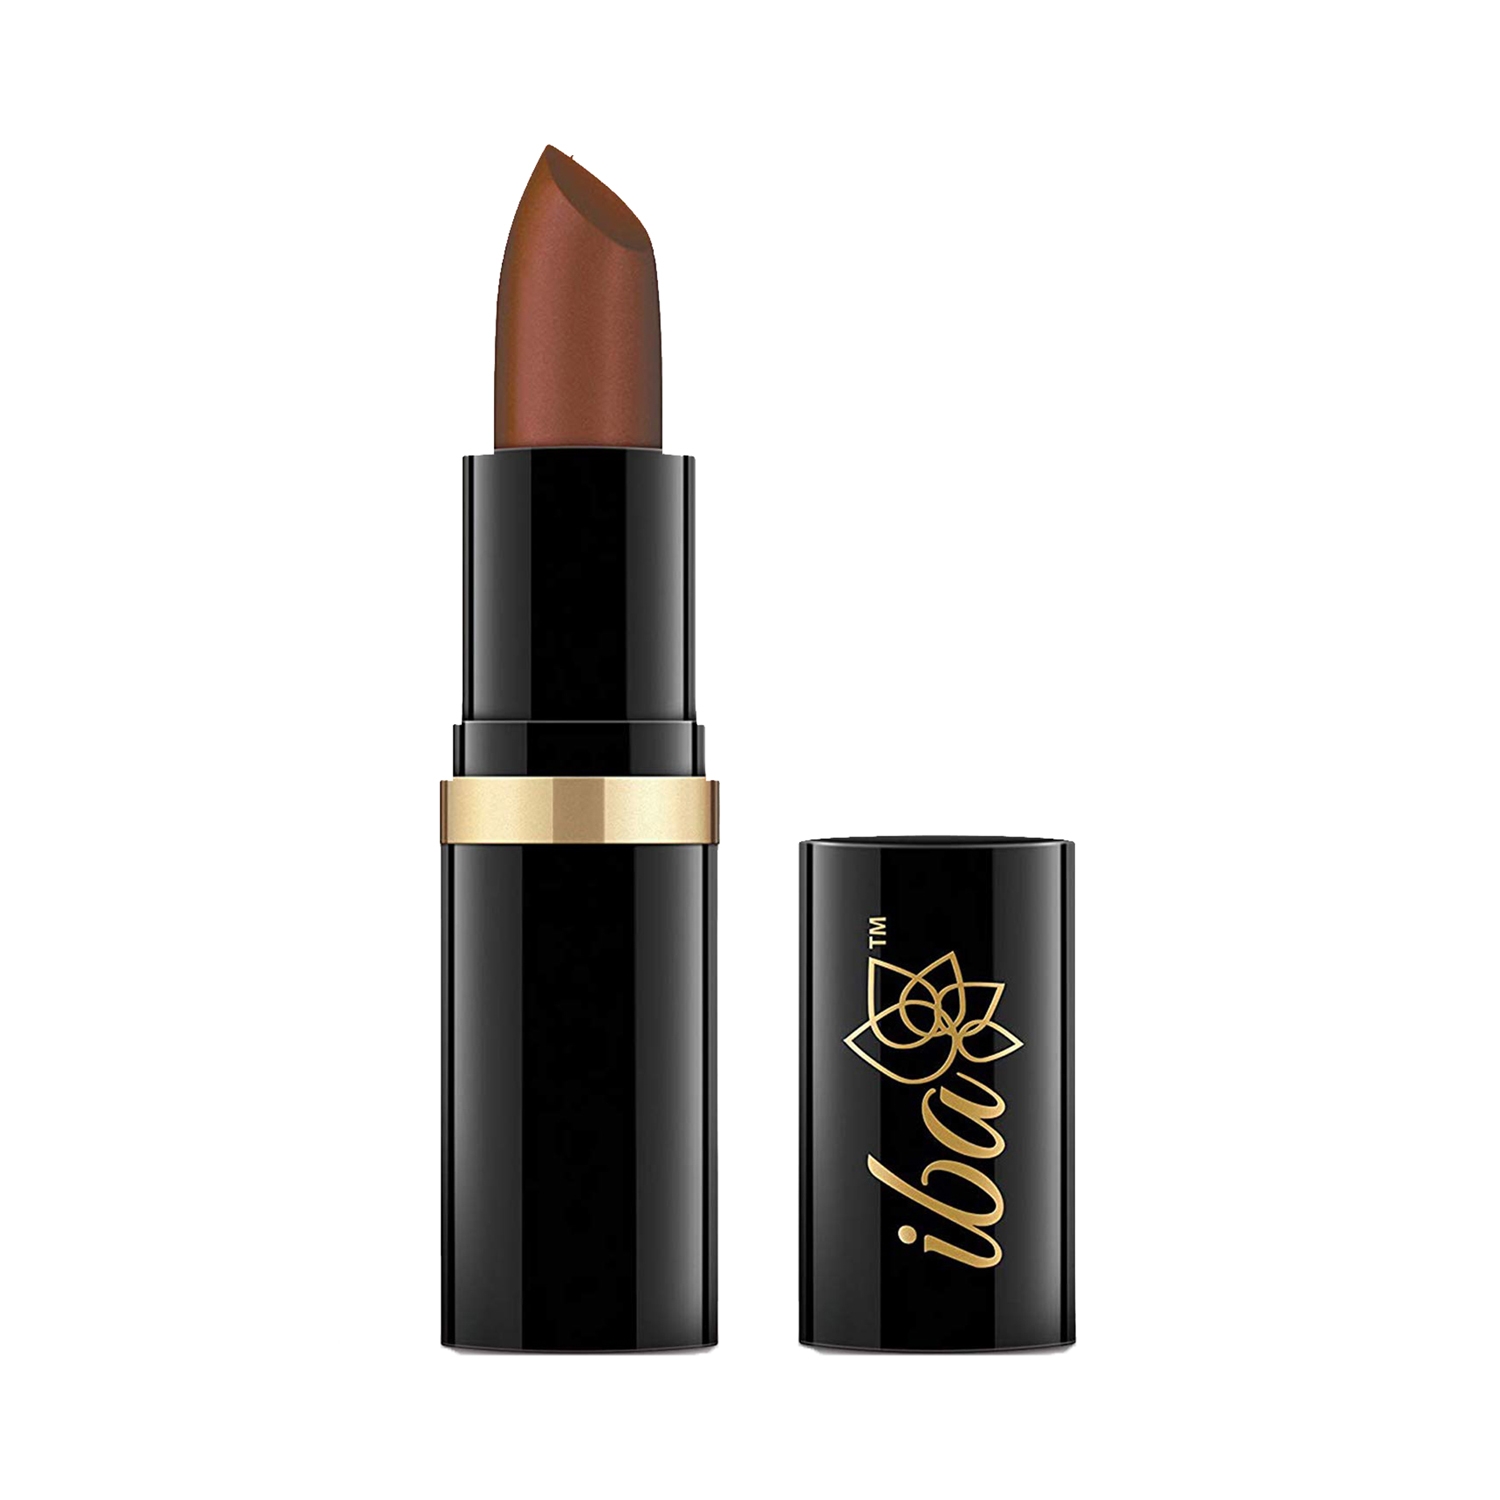 Iba | Iba Pure Lips Moisture Rich Lipstick - A30 Copper Dust (4g)